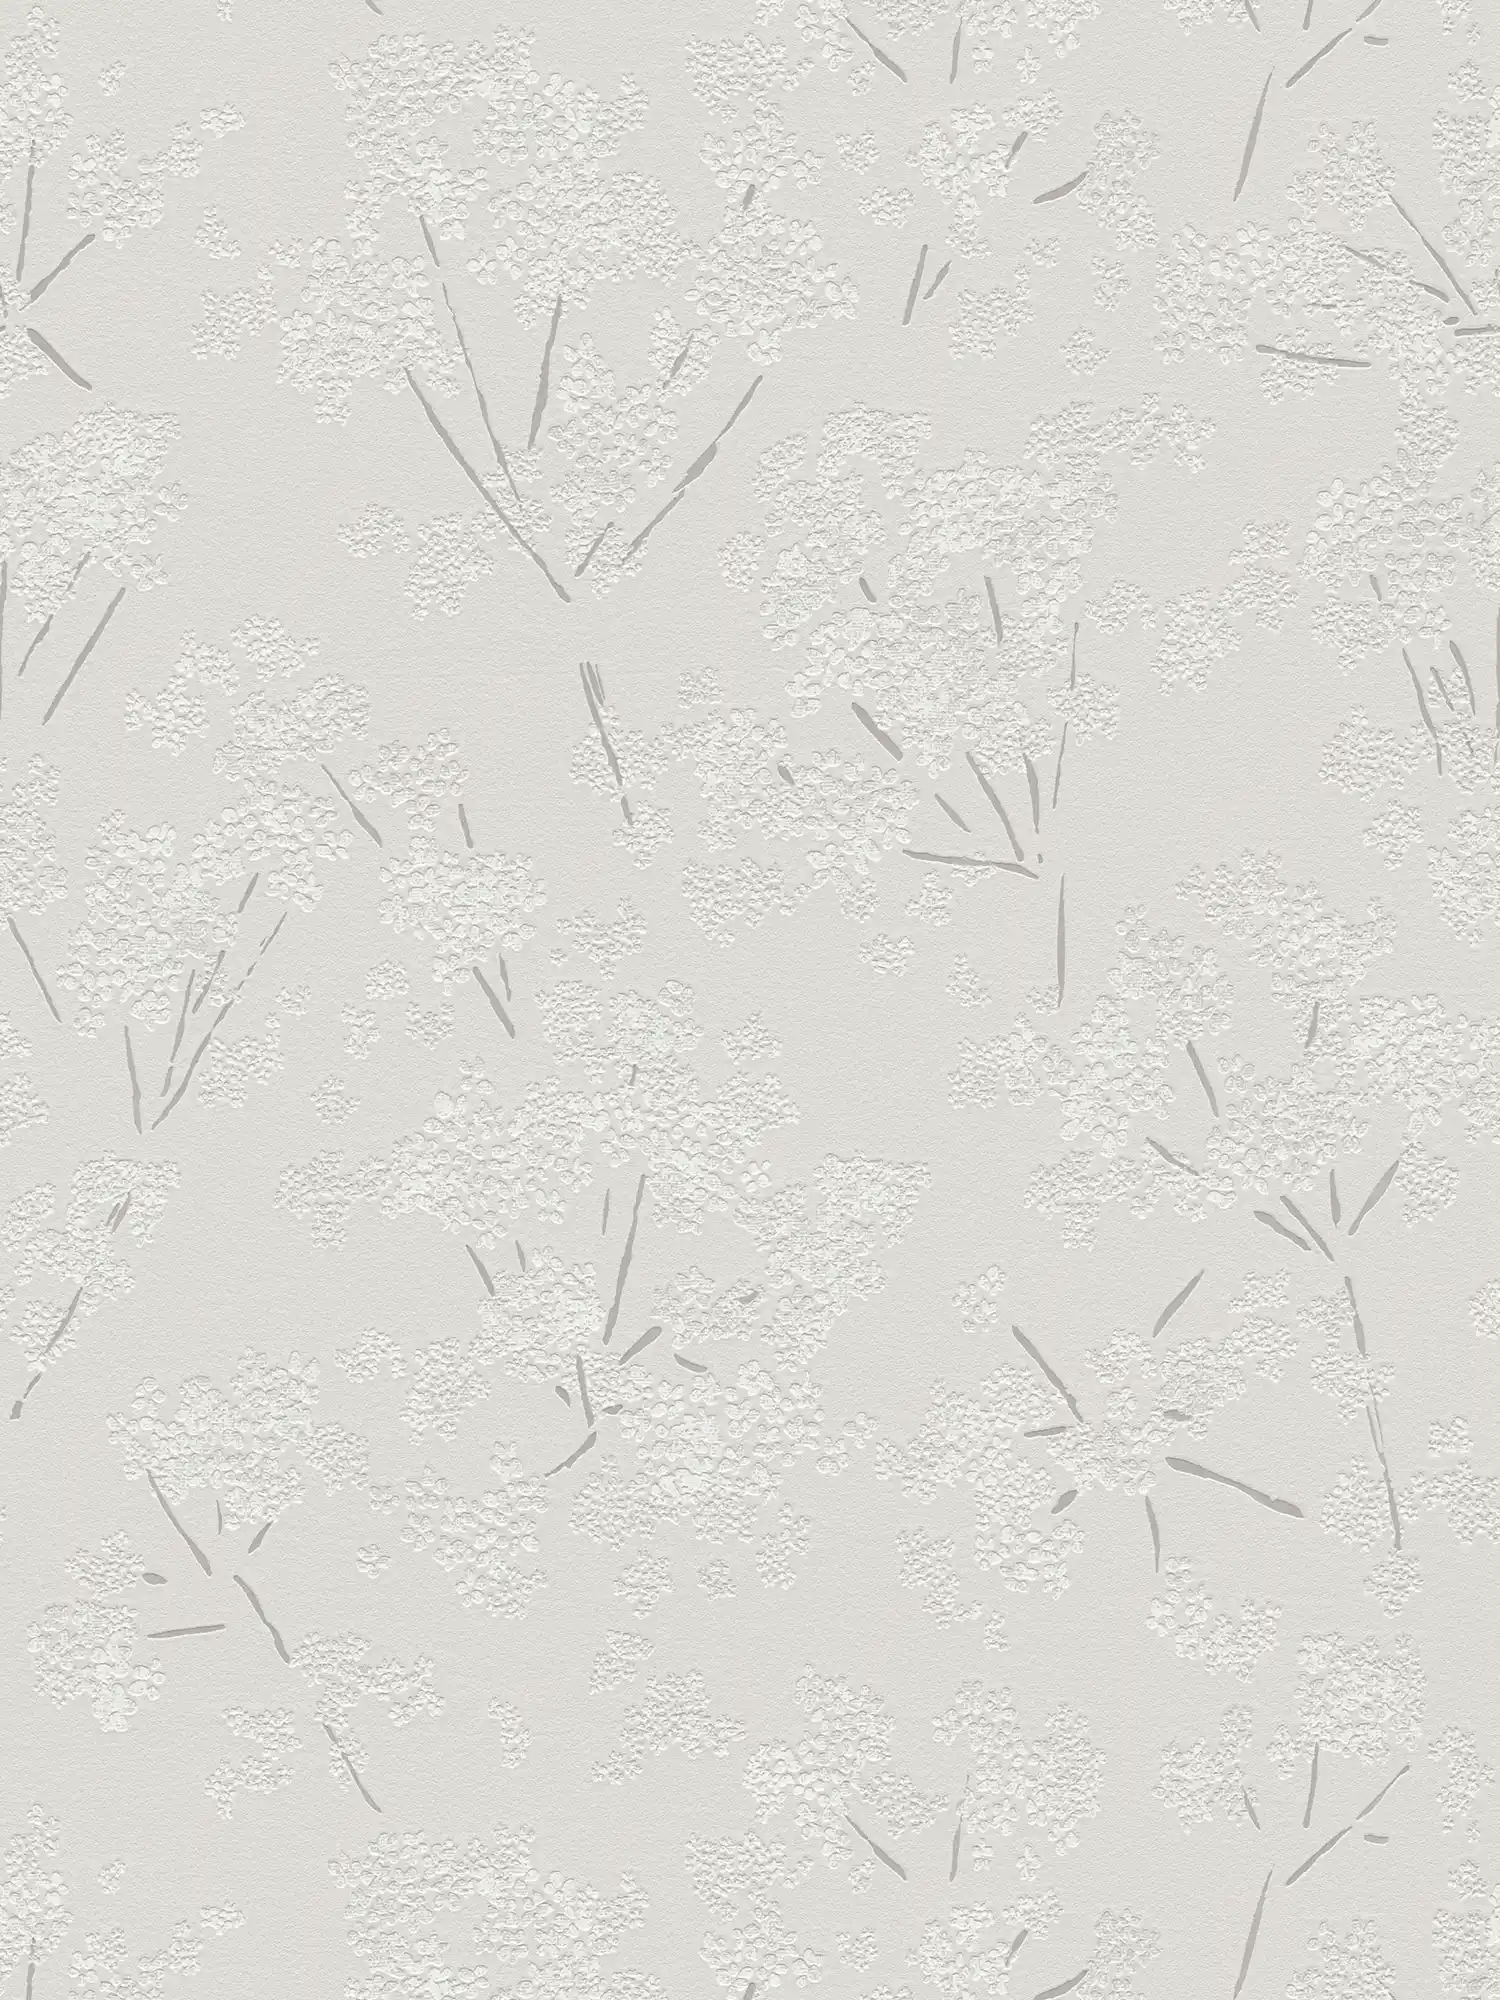 Vliesbehang met abstract bloemenpatroon - grijs, wit
